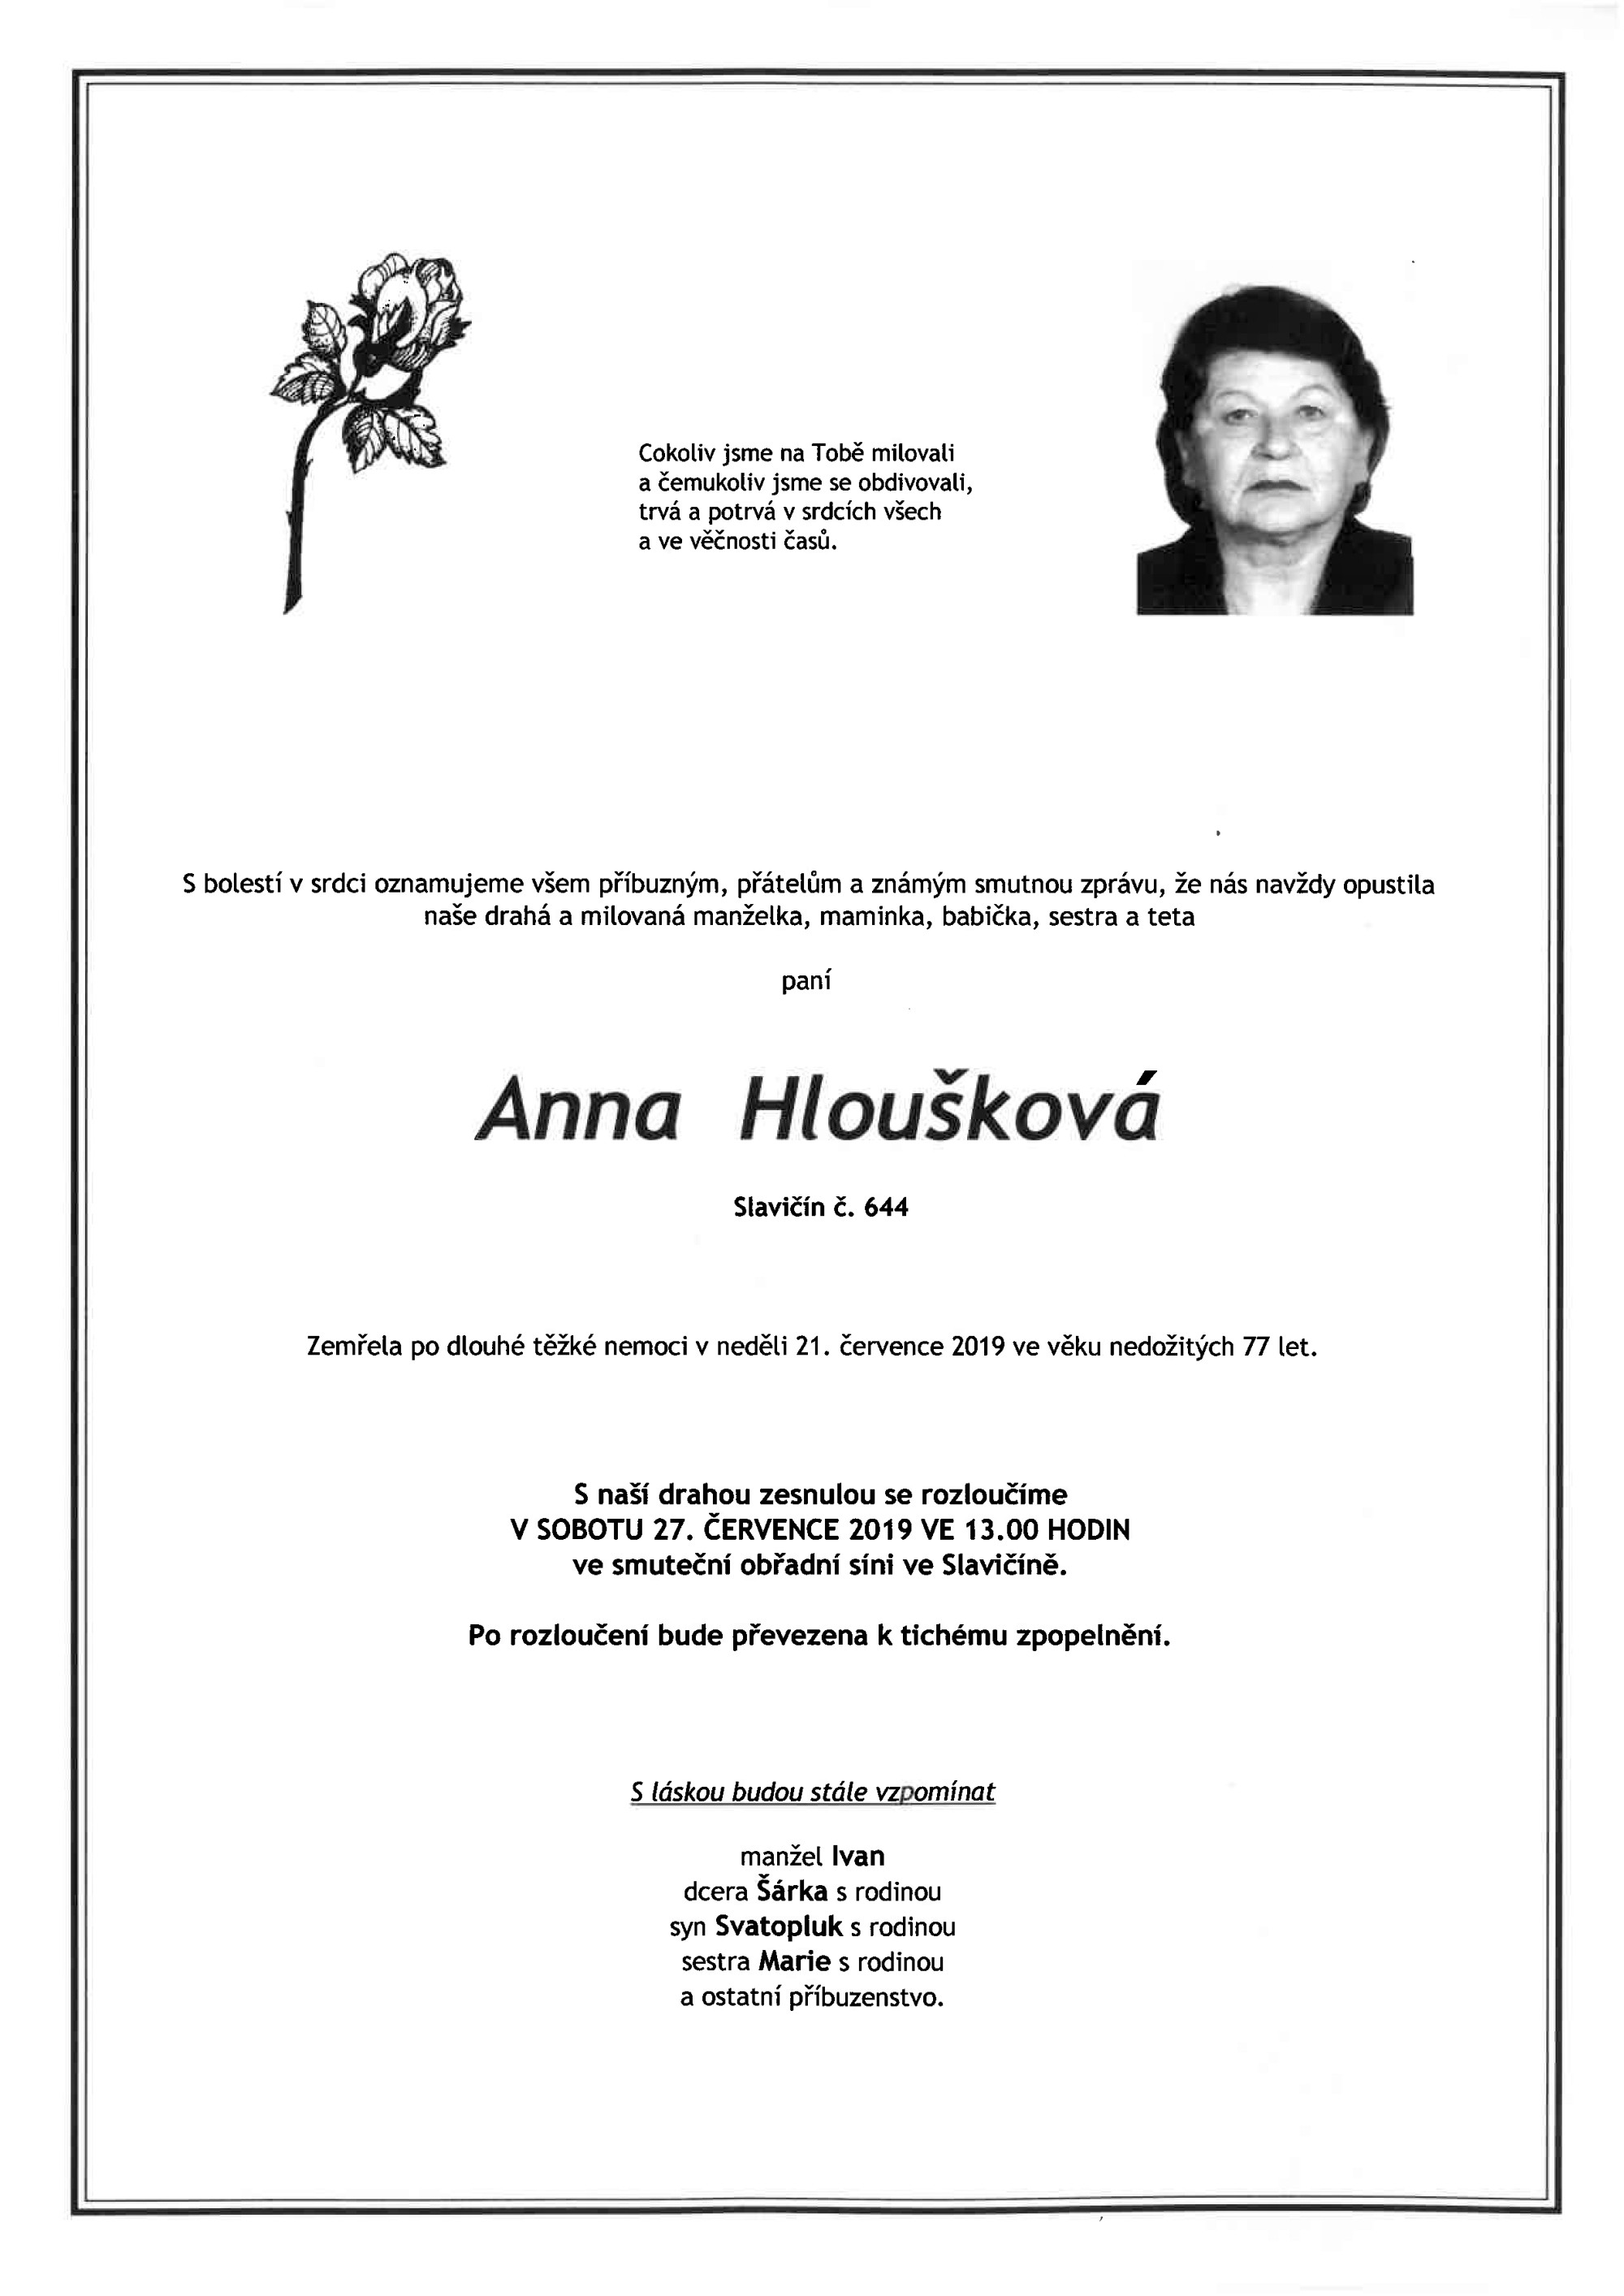 Anna Hloušková